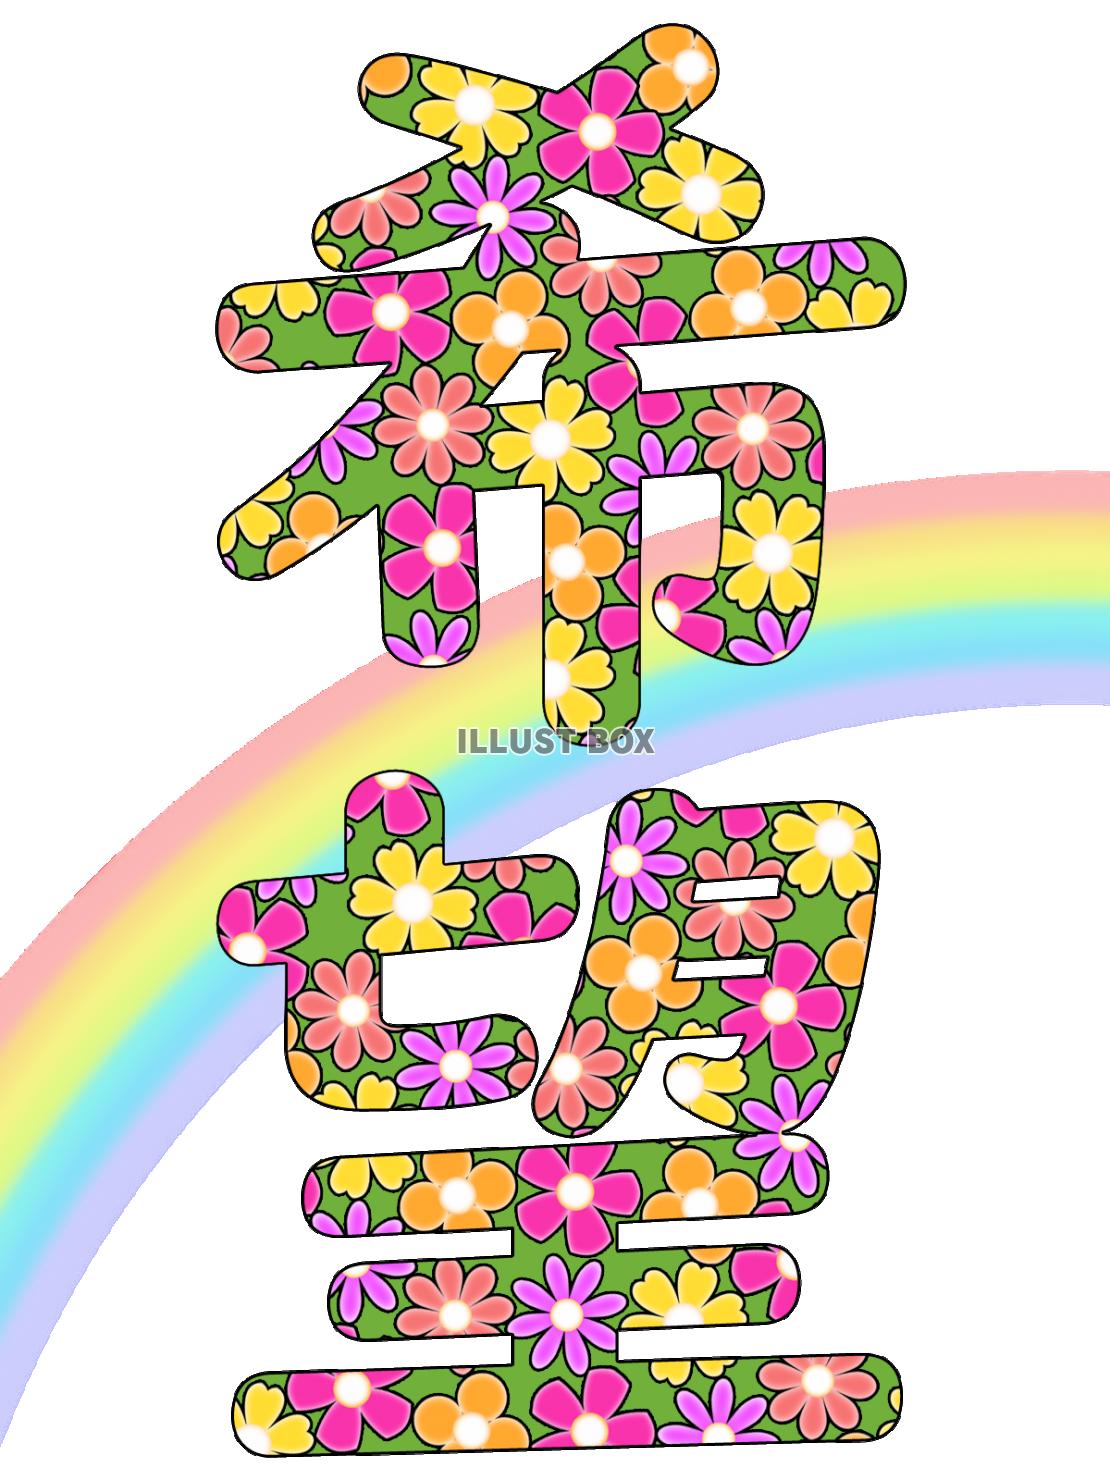 希望の花文字、カラフルで華やかな漢字イラスト素材png透過